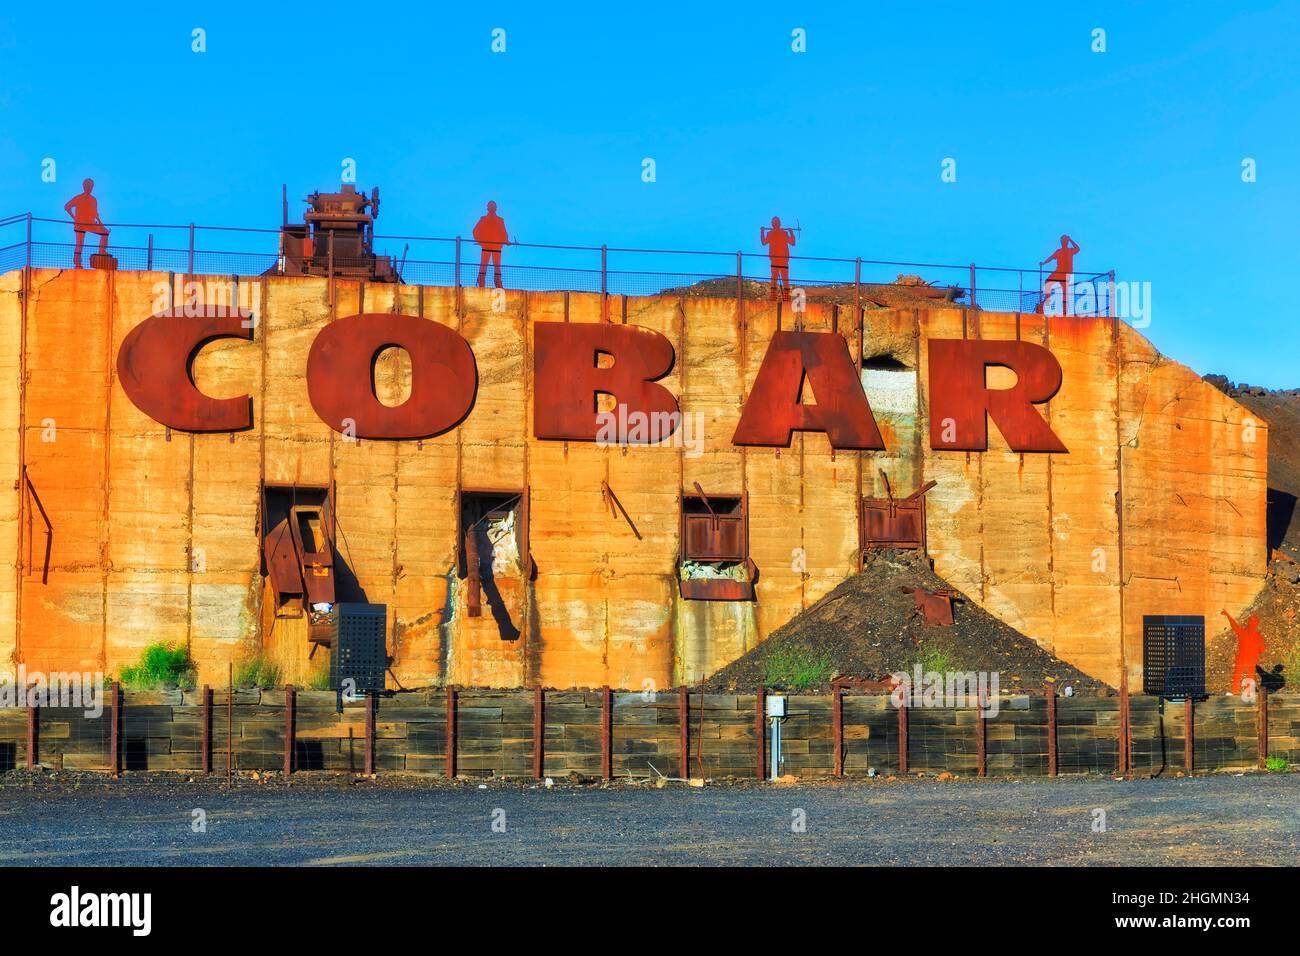 Bienvenue à la ville minière de cuivre de Cobar dans l'Outback australien - plaque de nom de la ville avec de l'équipement historique ancien. Banque D'Images